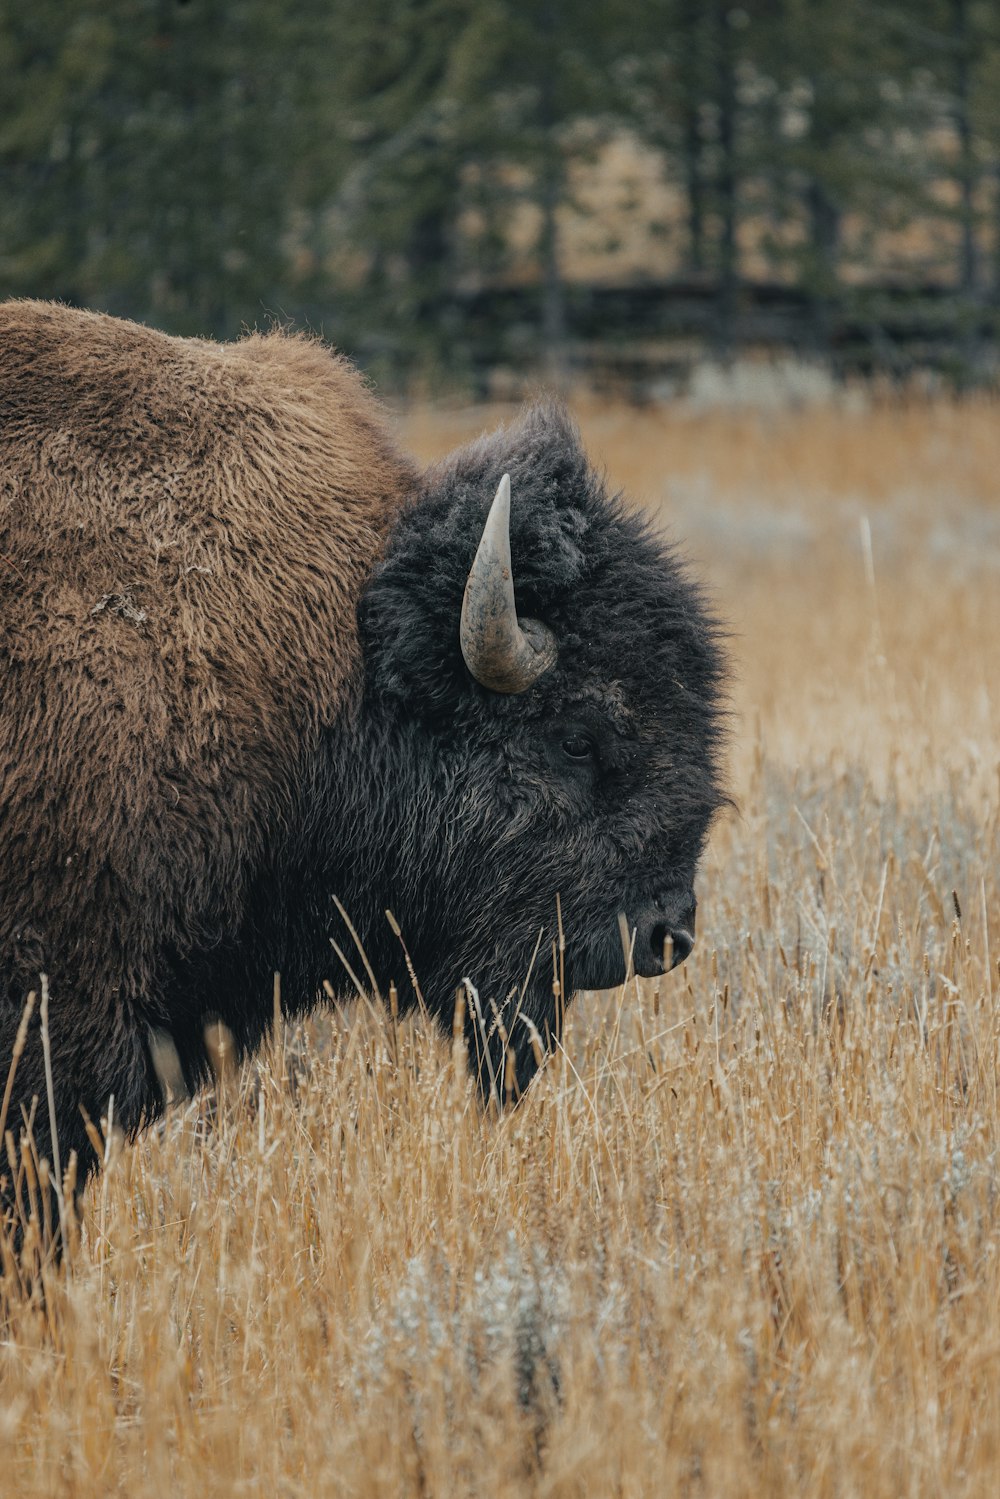 a buffalo in a field